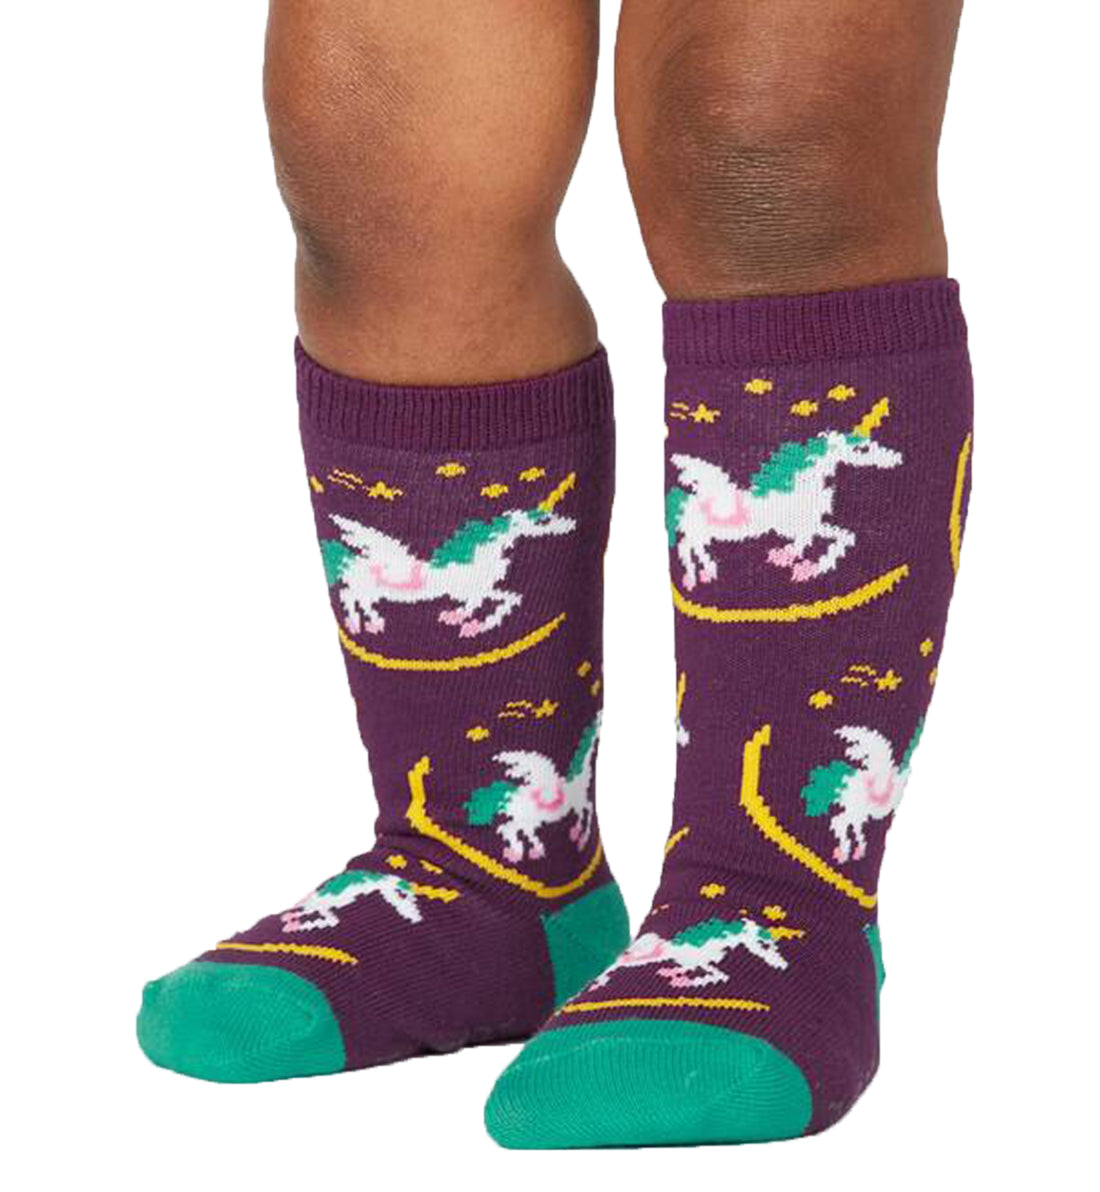 SOCK it to me Toddler Knee High Socks (tk0050),Wish Upon A Pegasus - Wish Upon A Pegasus,One Size